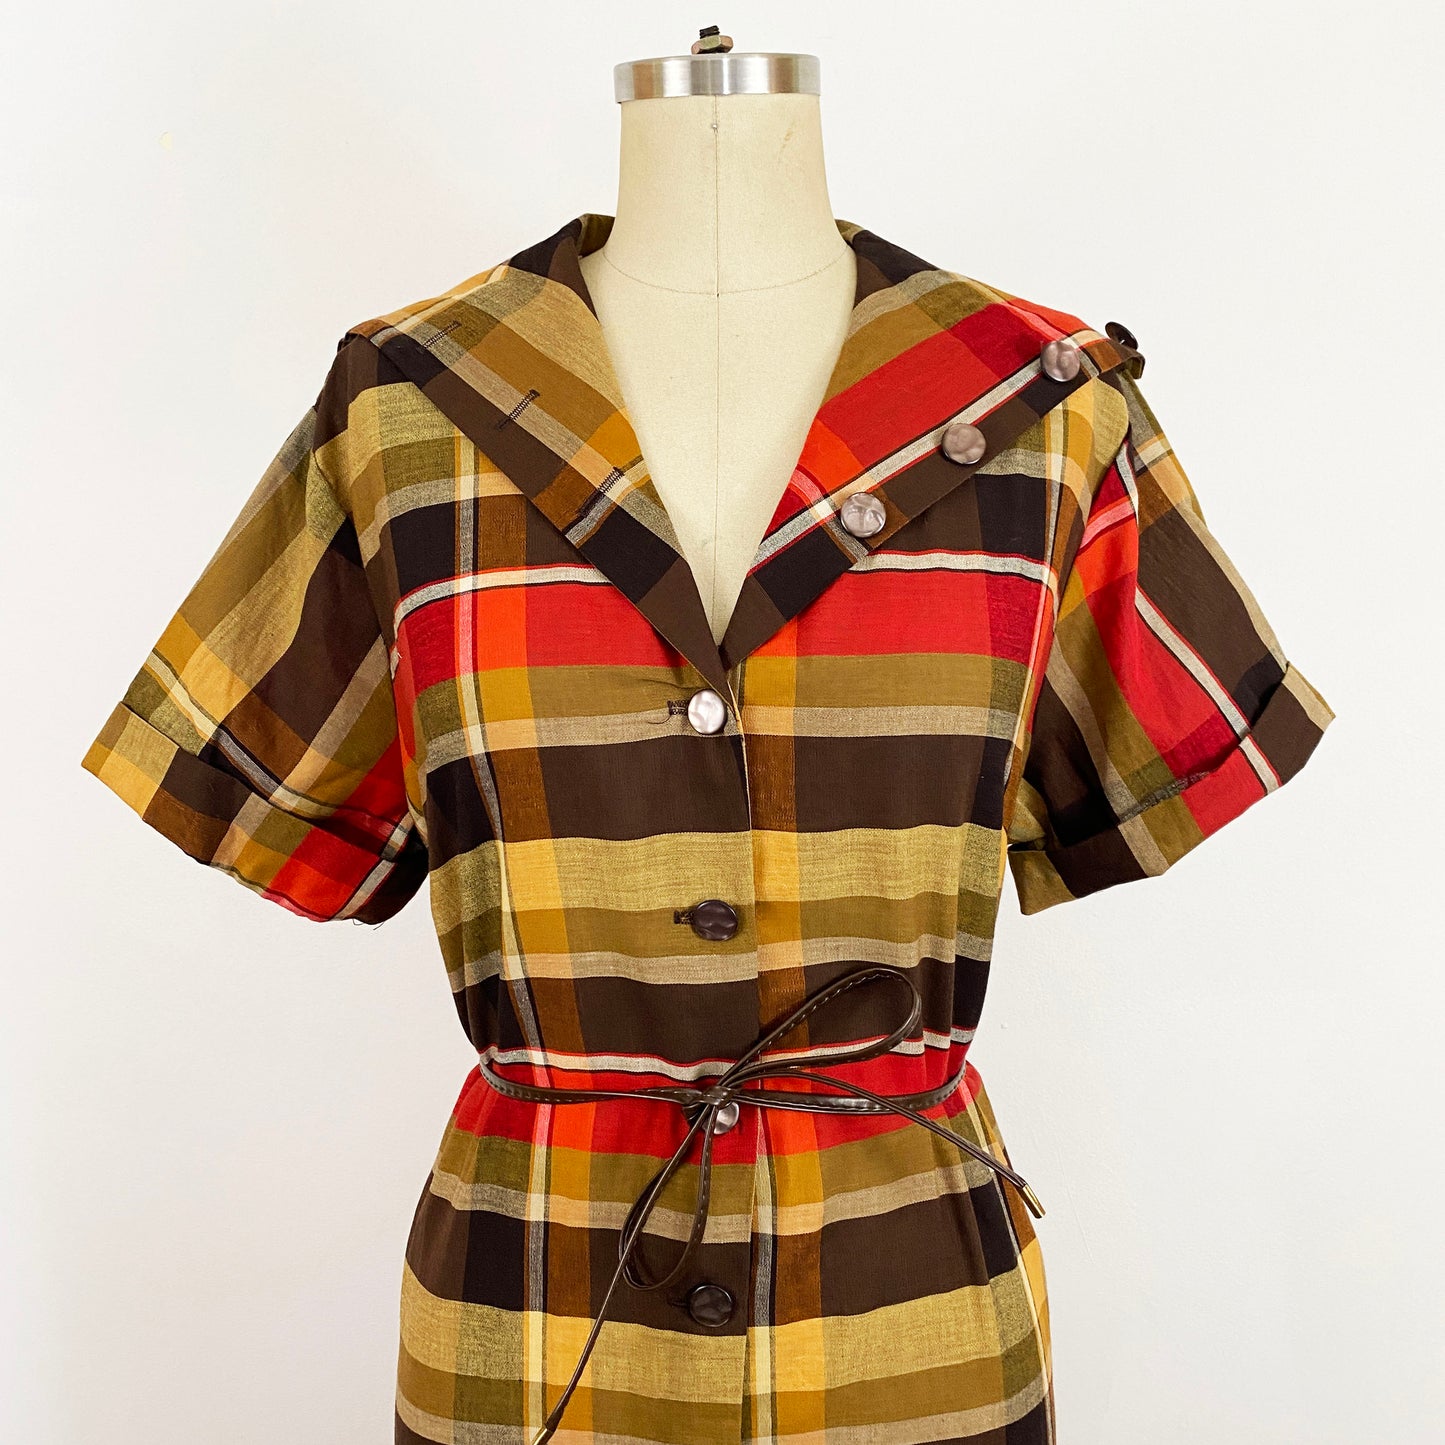 1950-1960s Autumn Plaid Cotton A-line Short Sleeve Shift Dress Button Collar Earth Tone Shirt Dress / Vintage Plus Size 0X 14/16